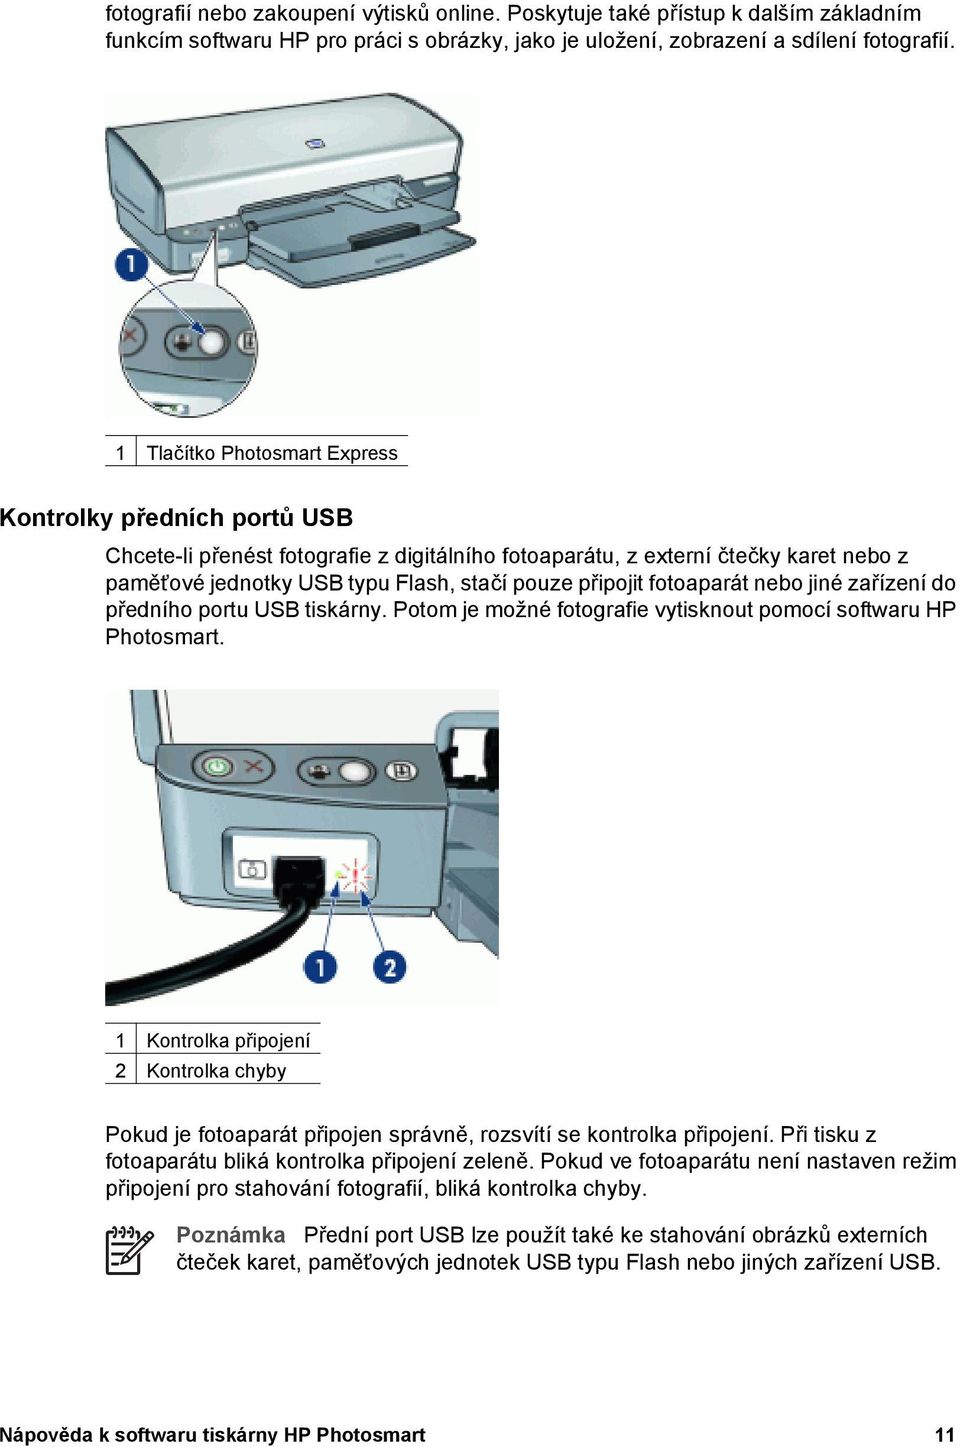 fotoaparát nebo jiné zařízení do předního portu USB tiskárny. Potom je možné fotografie vytisknout pomocí softwaru HP Photosmart.